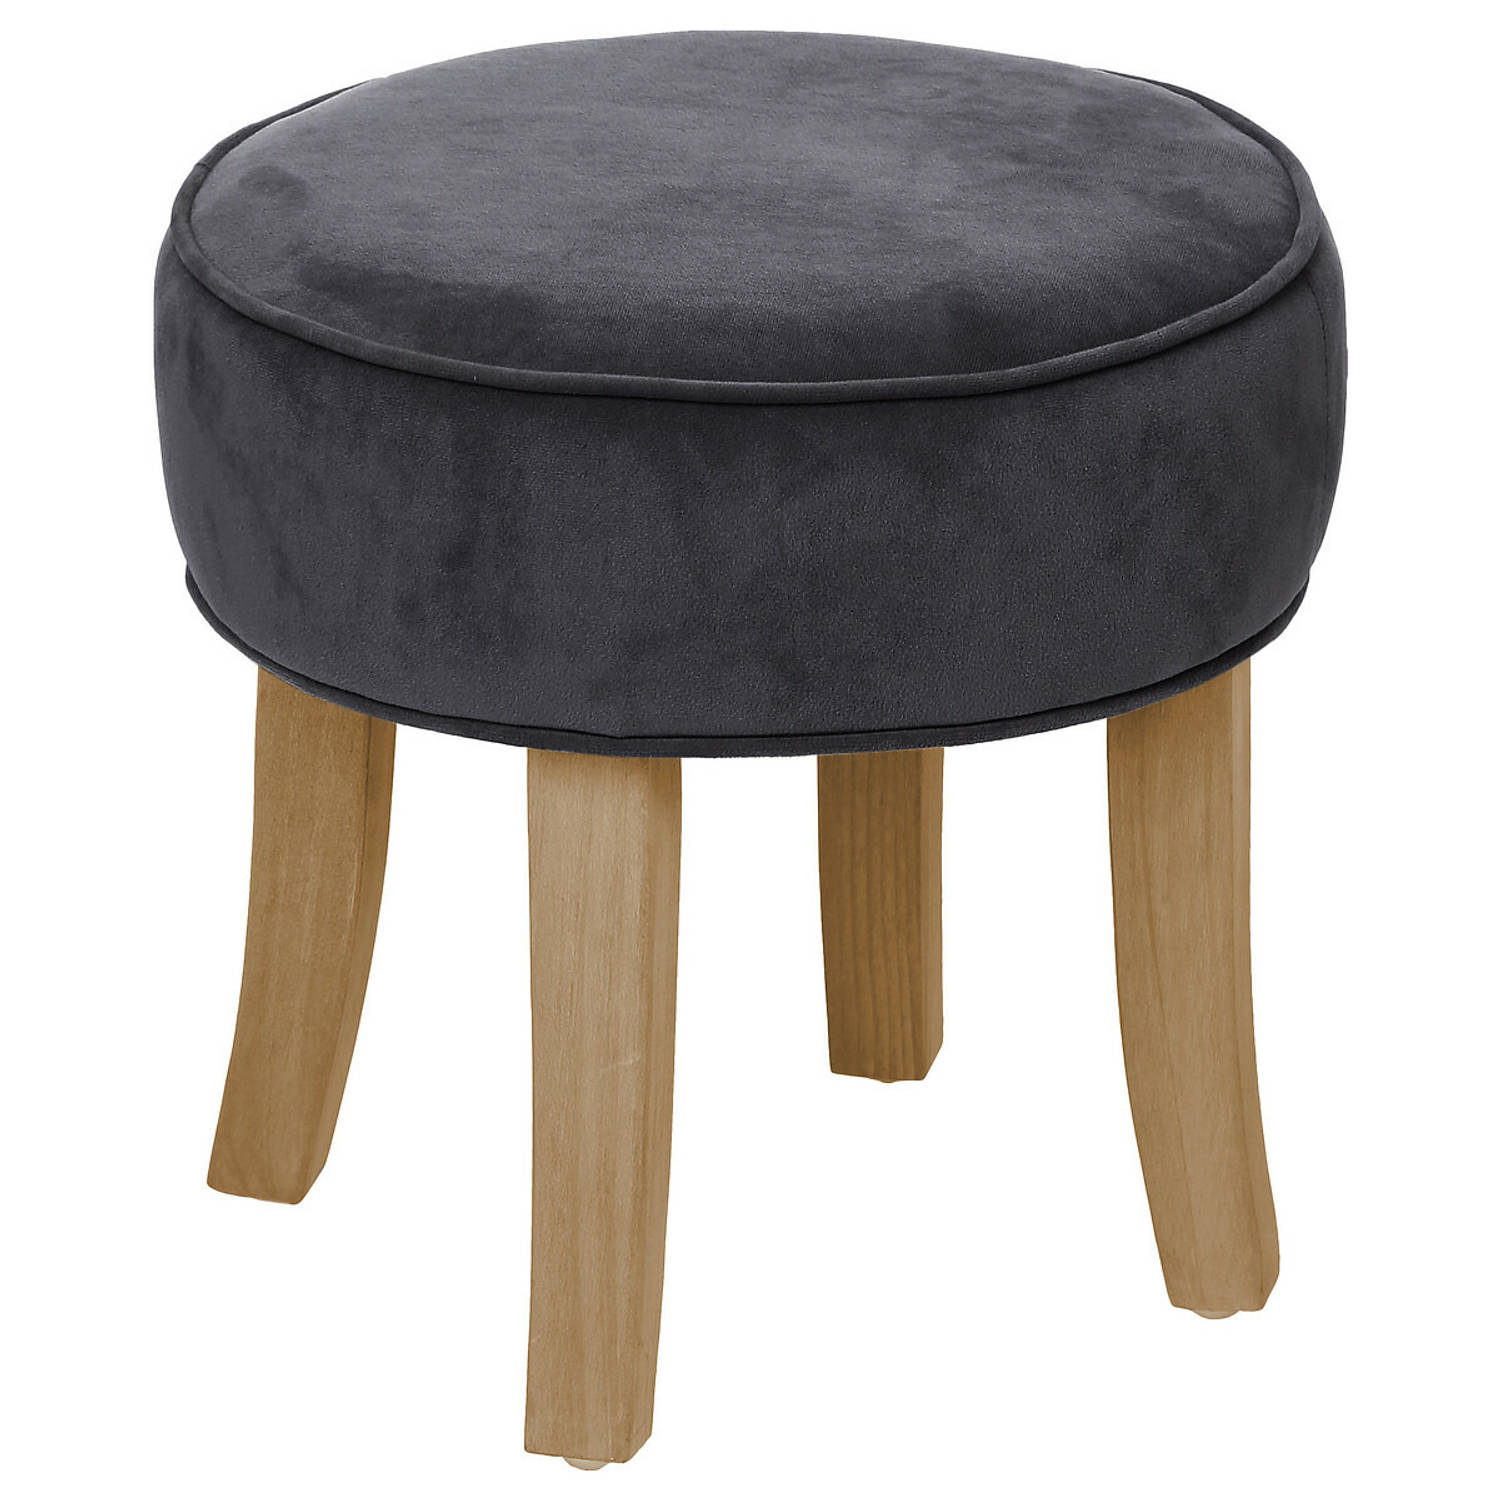 Atmosphera Zit krukje/bijzet stoel - hout/stof - grijs fluweel - D35 x H40 cm